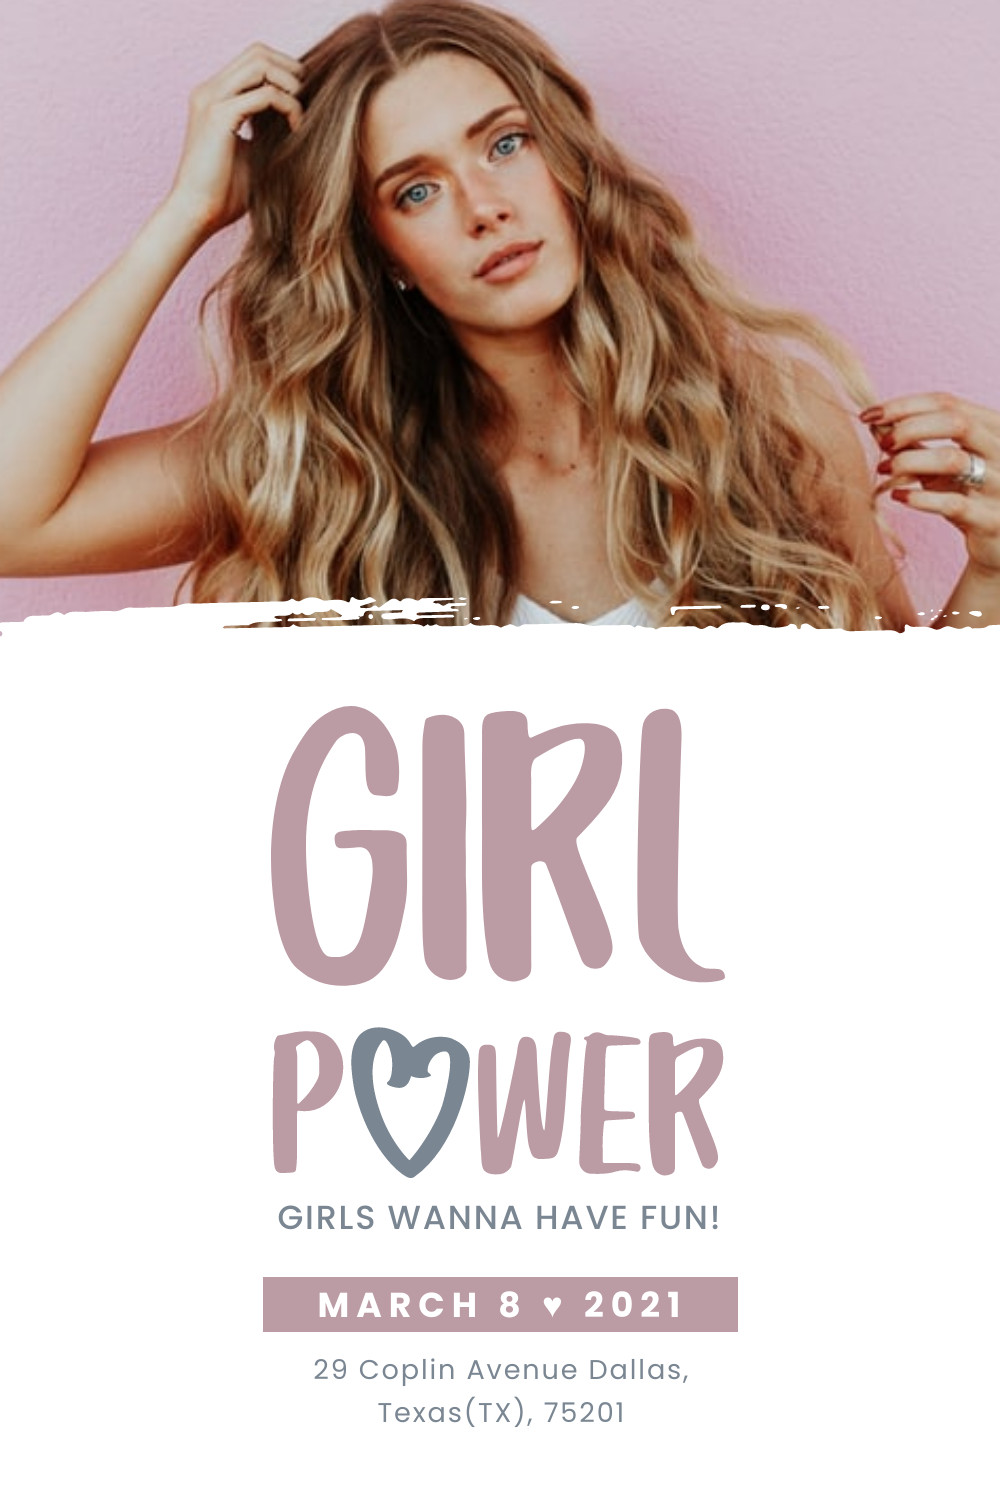 Girl Fun Power Women's Day Facebook Cover 820x360